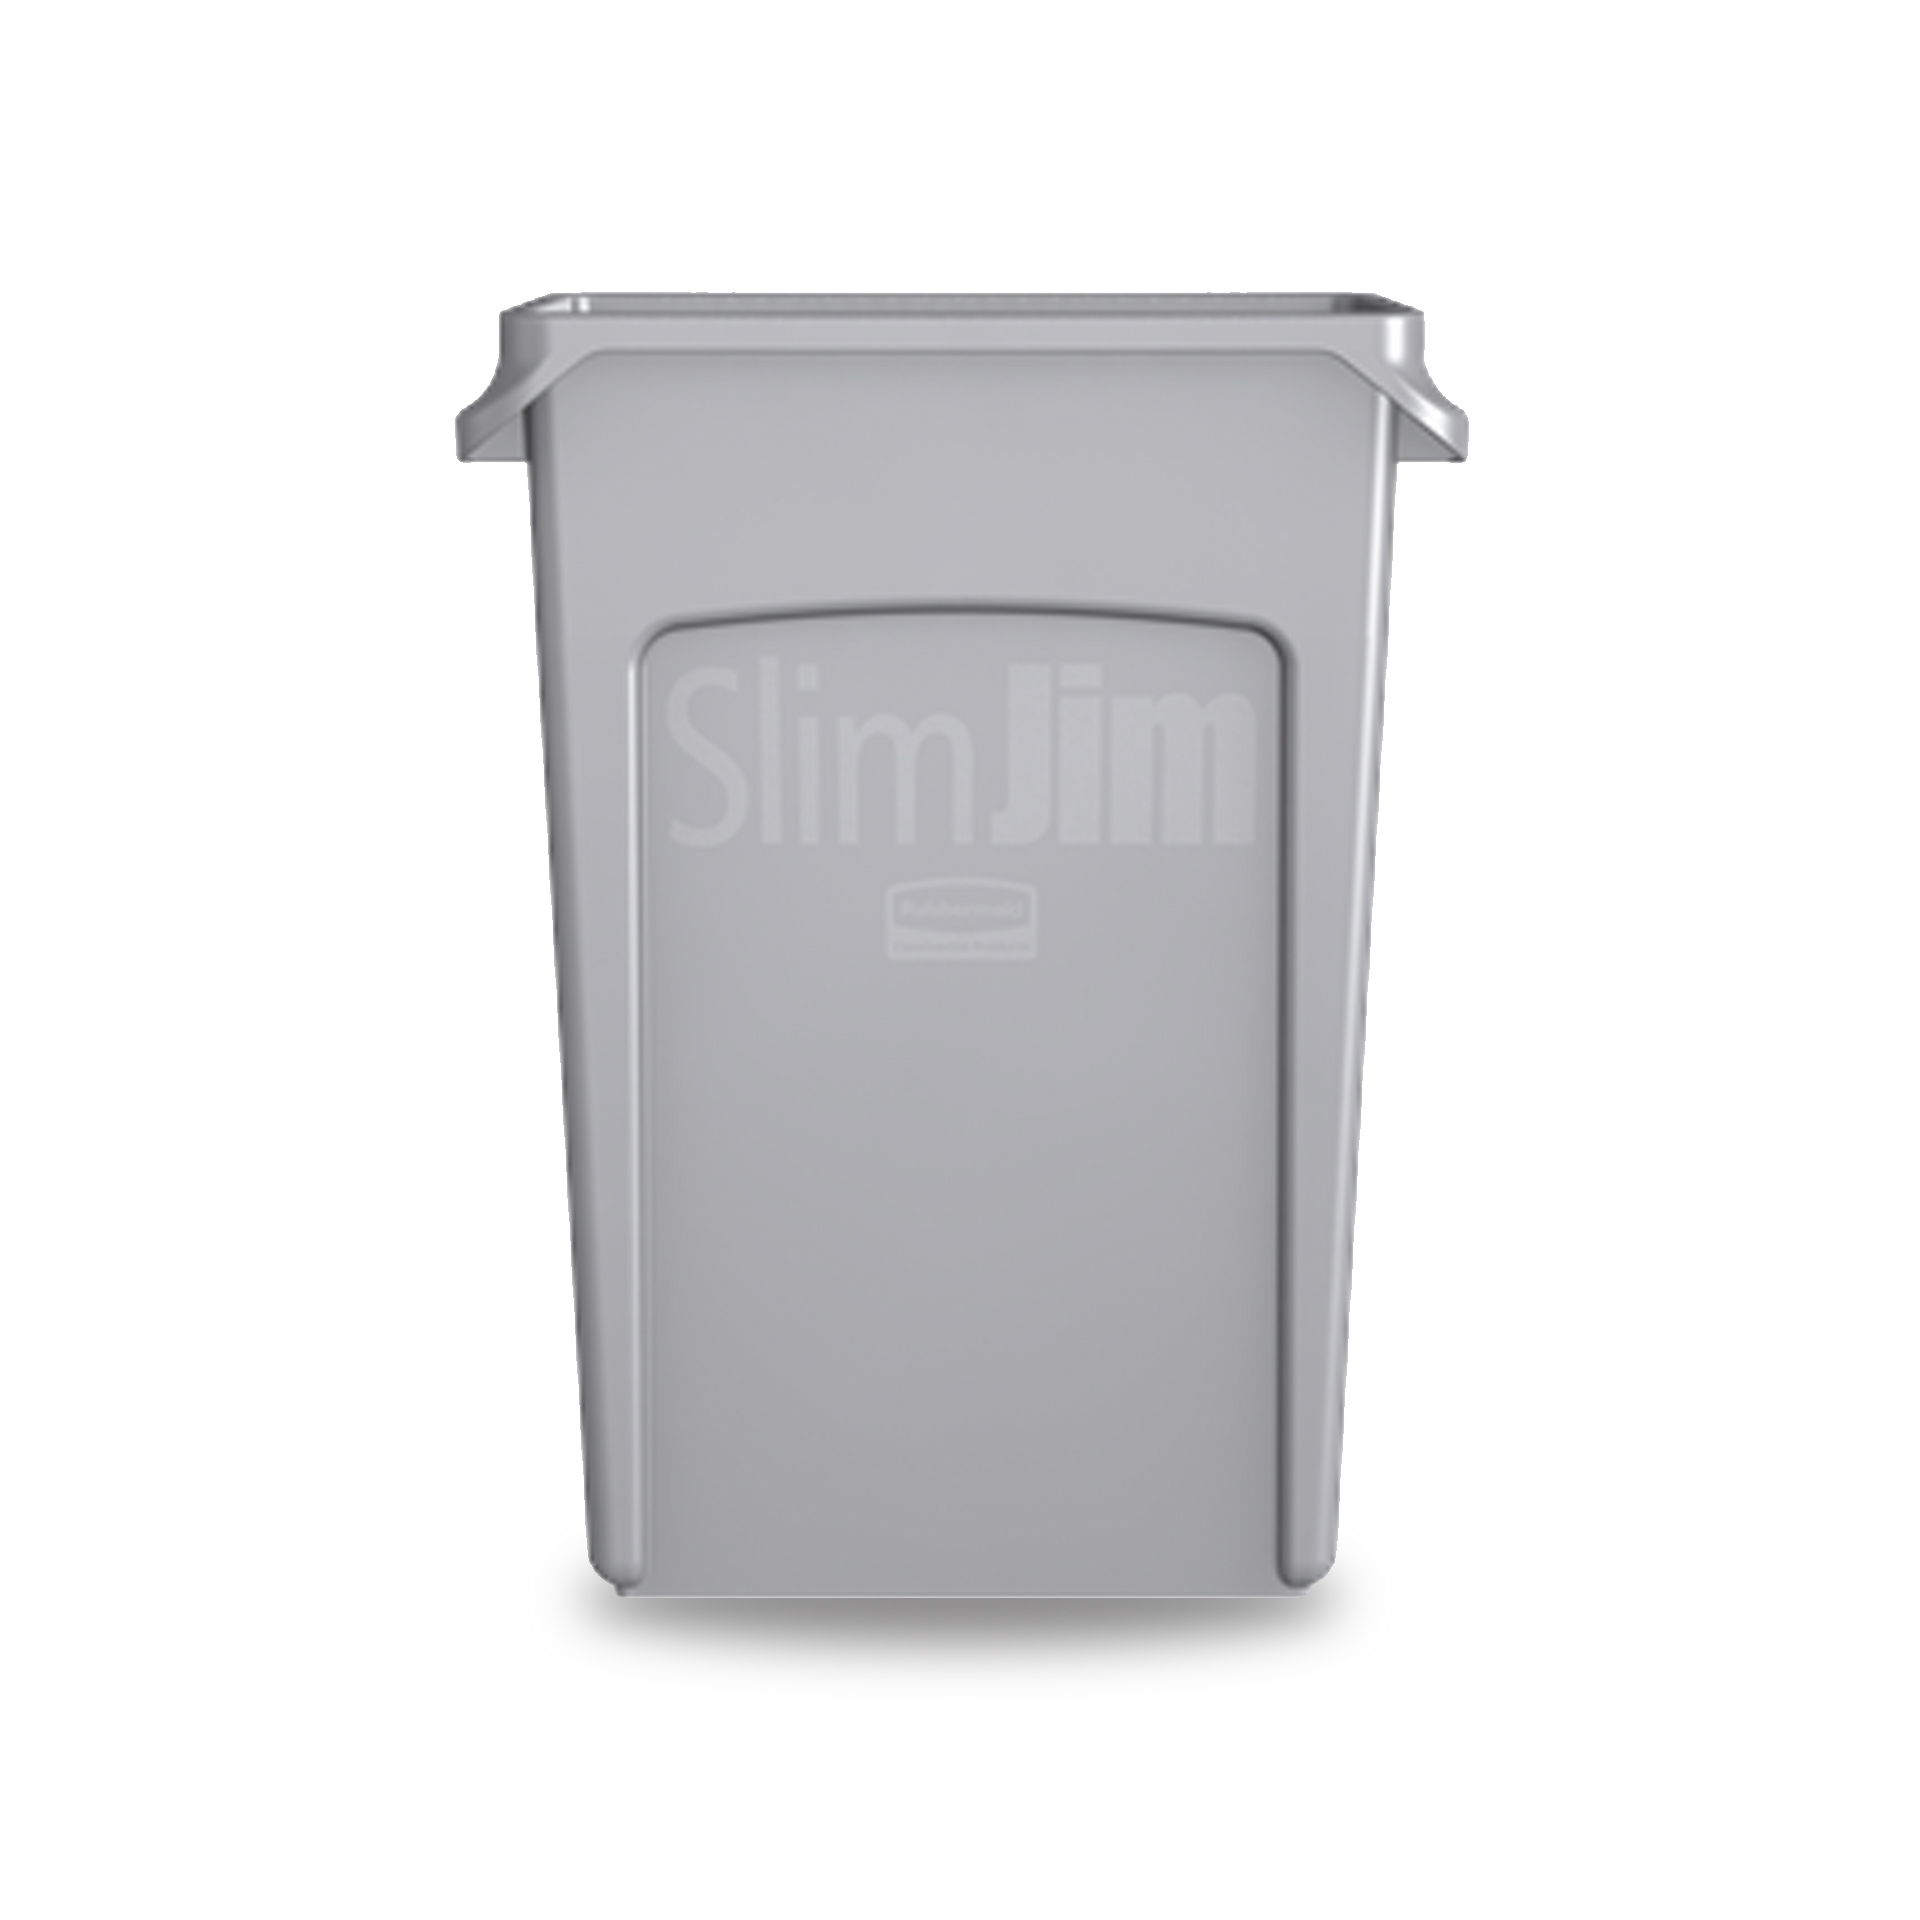 ถังขยะอเนกประสงค์ทรงสูง SLIM JIM® ขนาด 87.1 ลิตร สีเทา